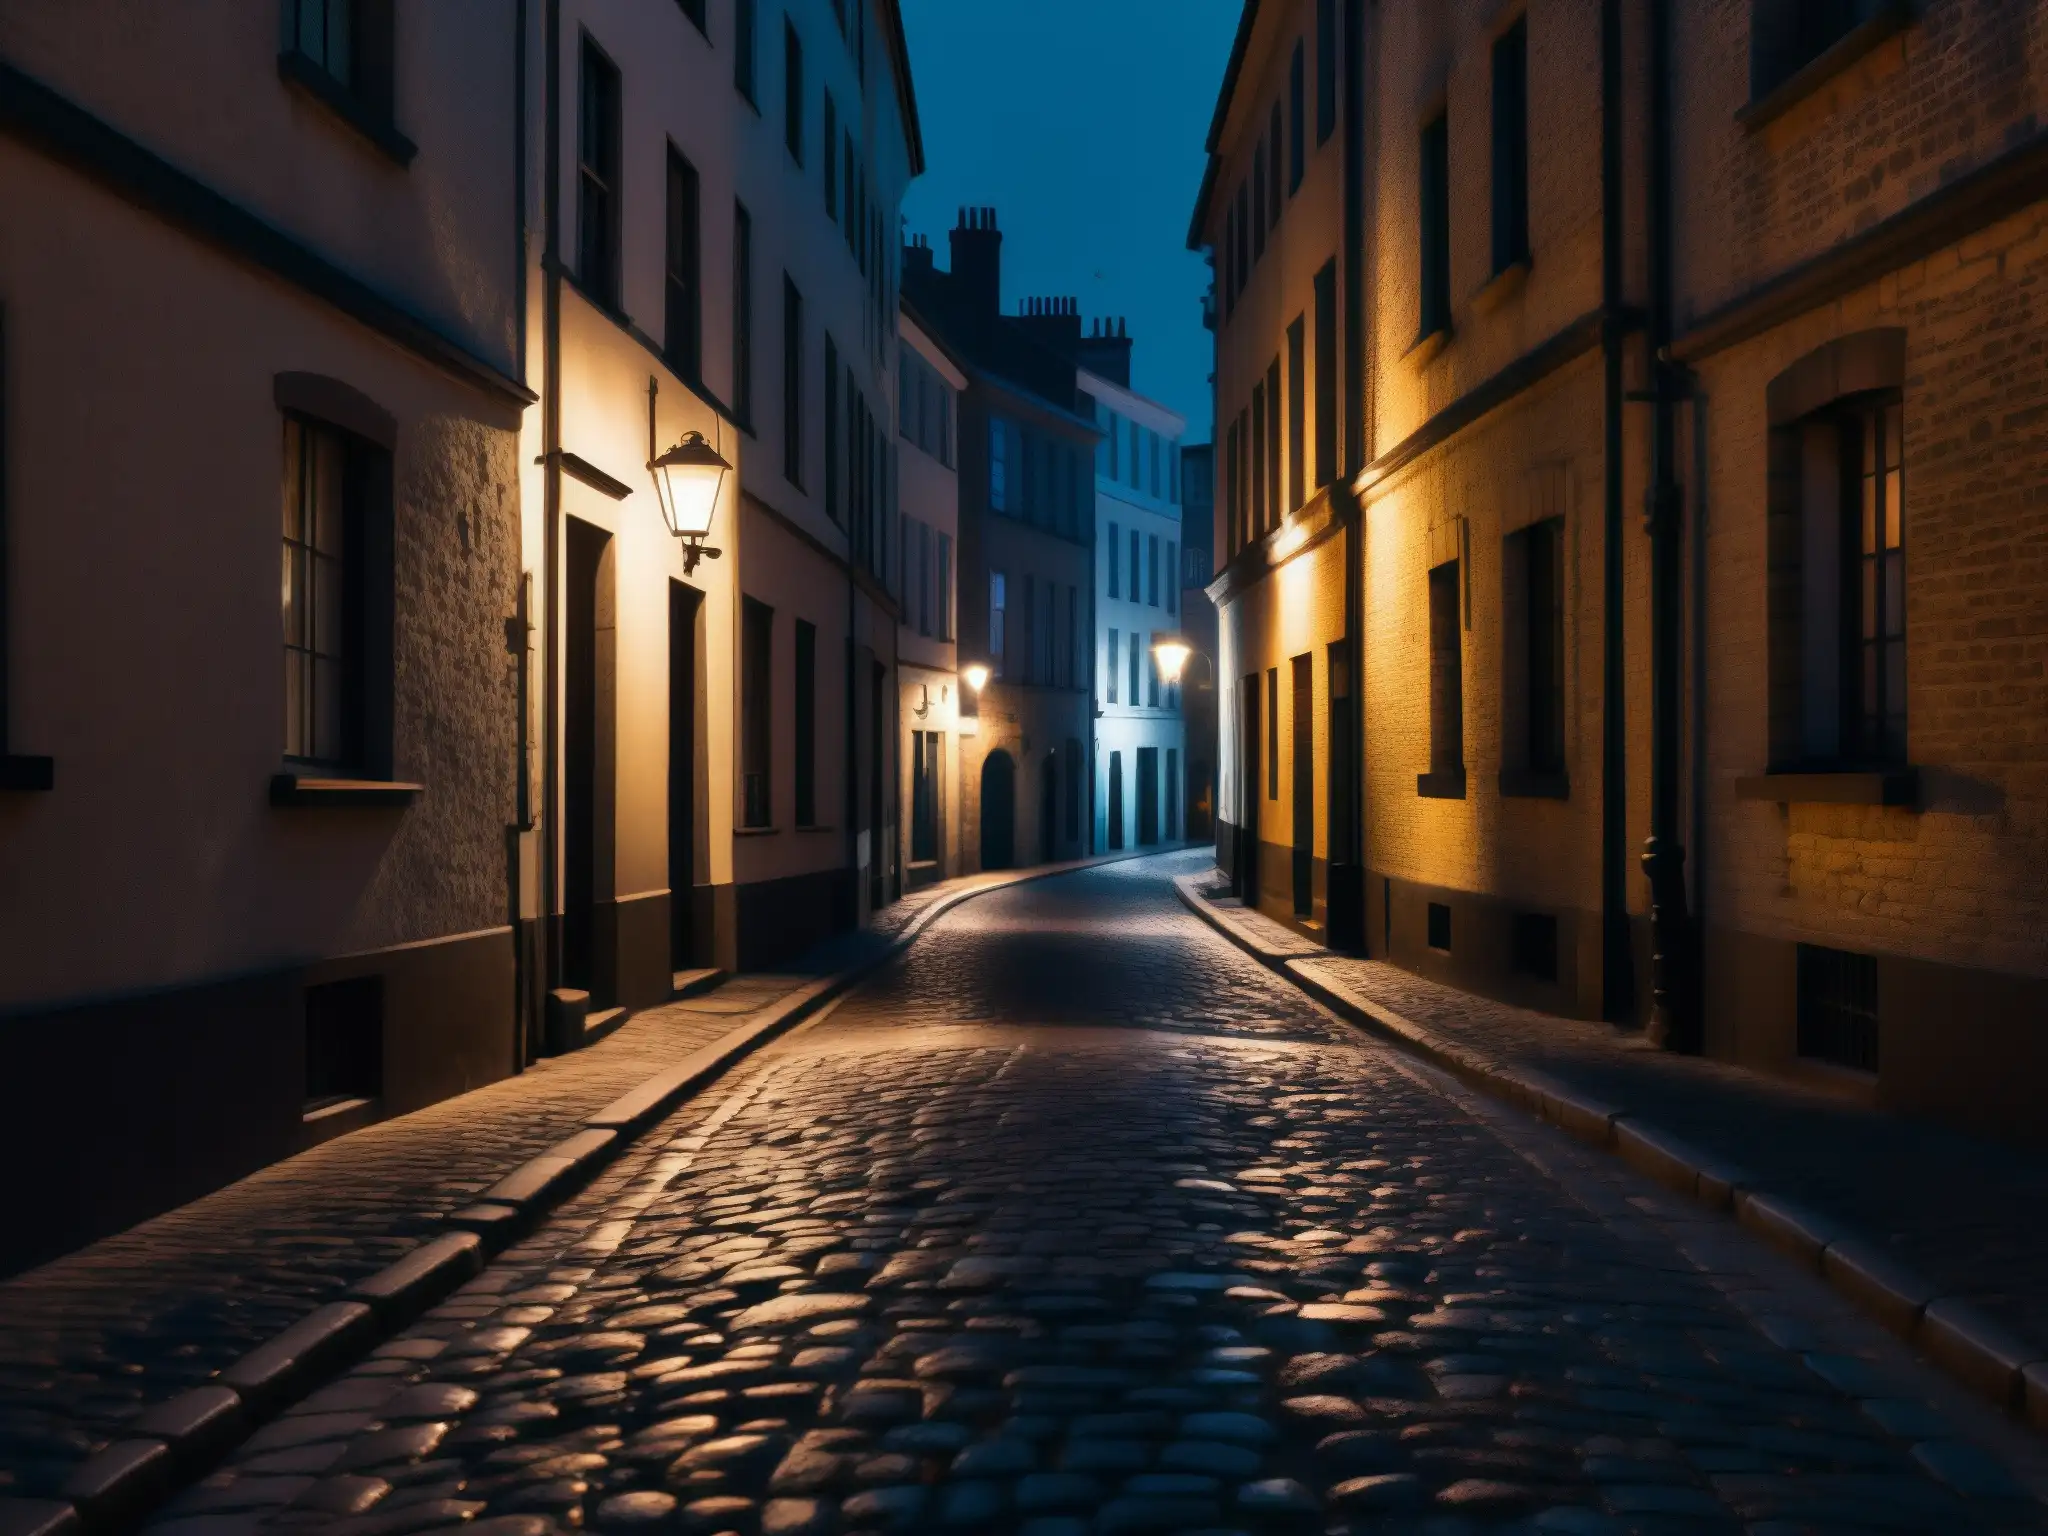 Una calle nocturna de la ciudad, iluminada con sombras inquietantes y luces parpadeantes, evocando desconfianza social en leyendas urbanas